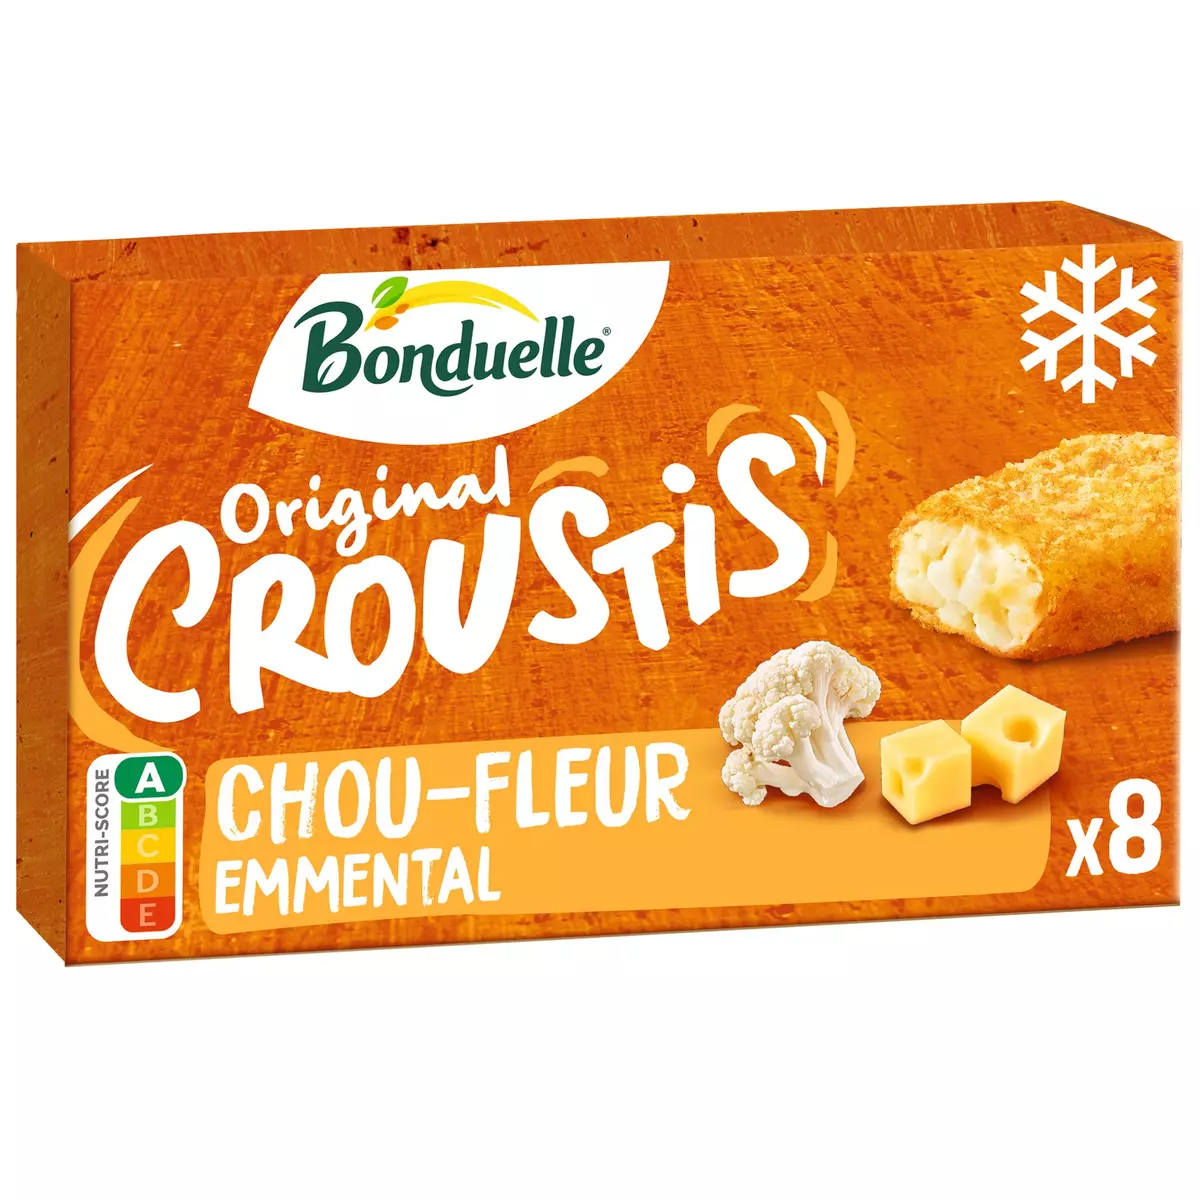 BONDUELLE Original croustis chou-fleur 8 pièces 305g